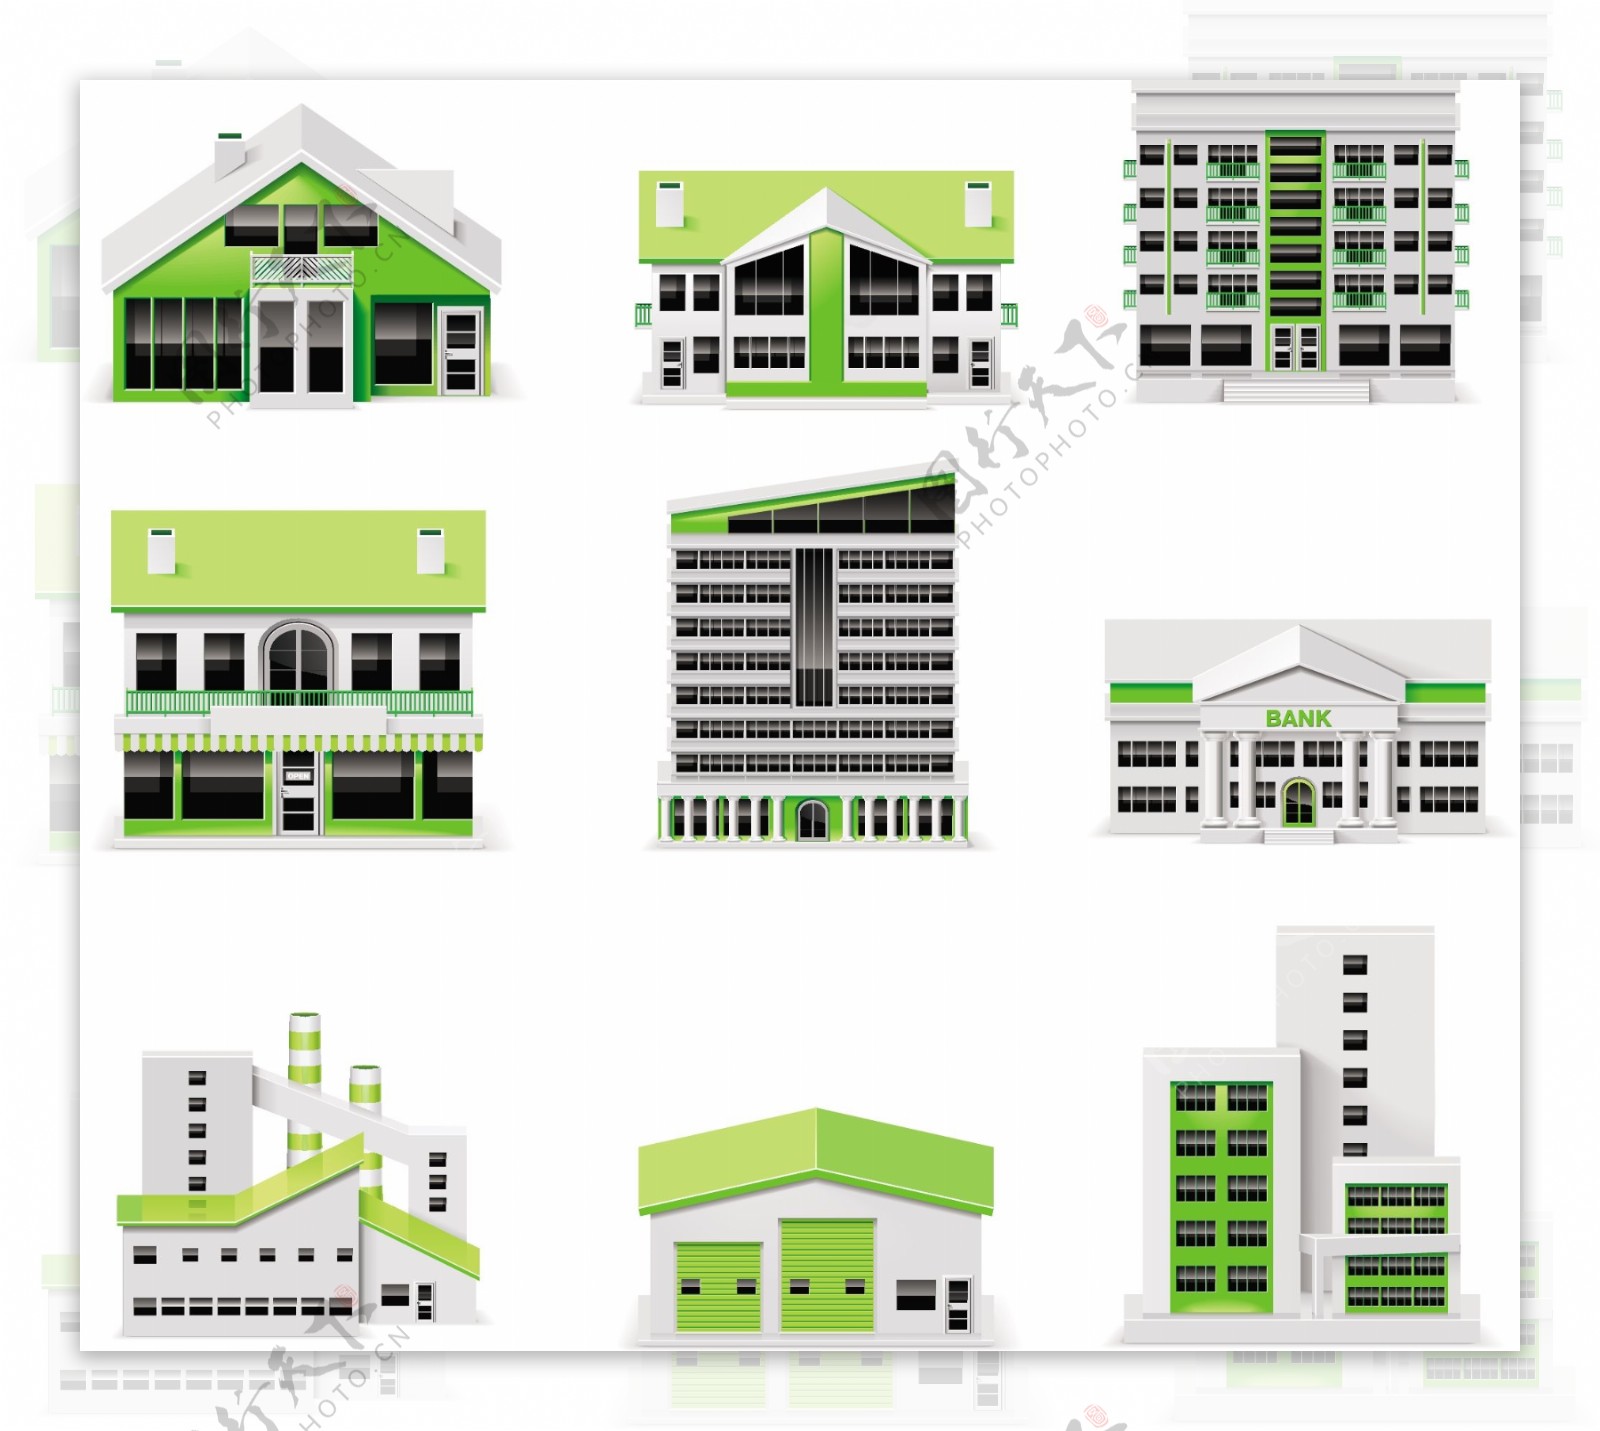 不同的绿色城市建筑设计矢量